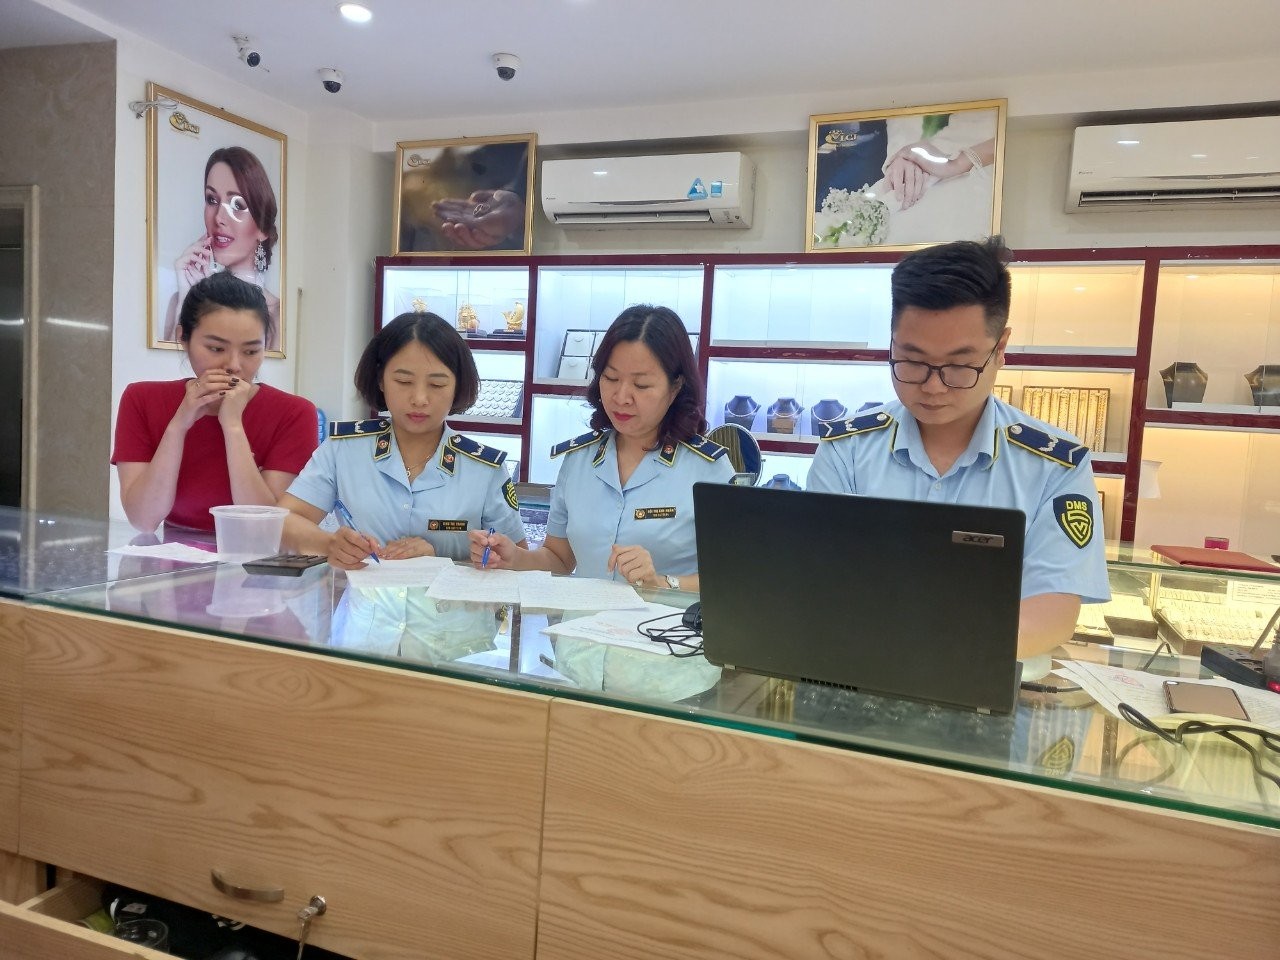 Quảng Ninh: Truy thu thuế bổ sung hơn 51 tỷ đồng từ chống buôn lậu, gian lận thương mại